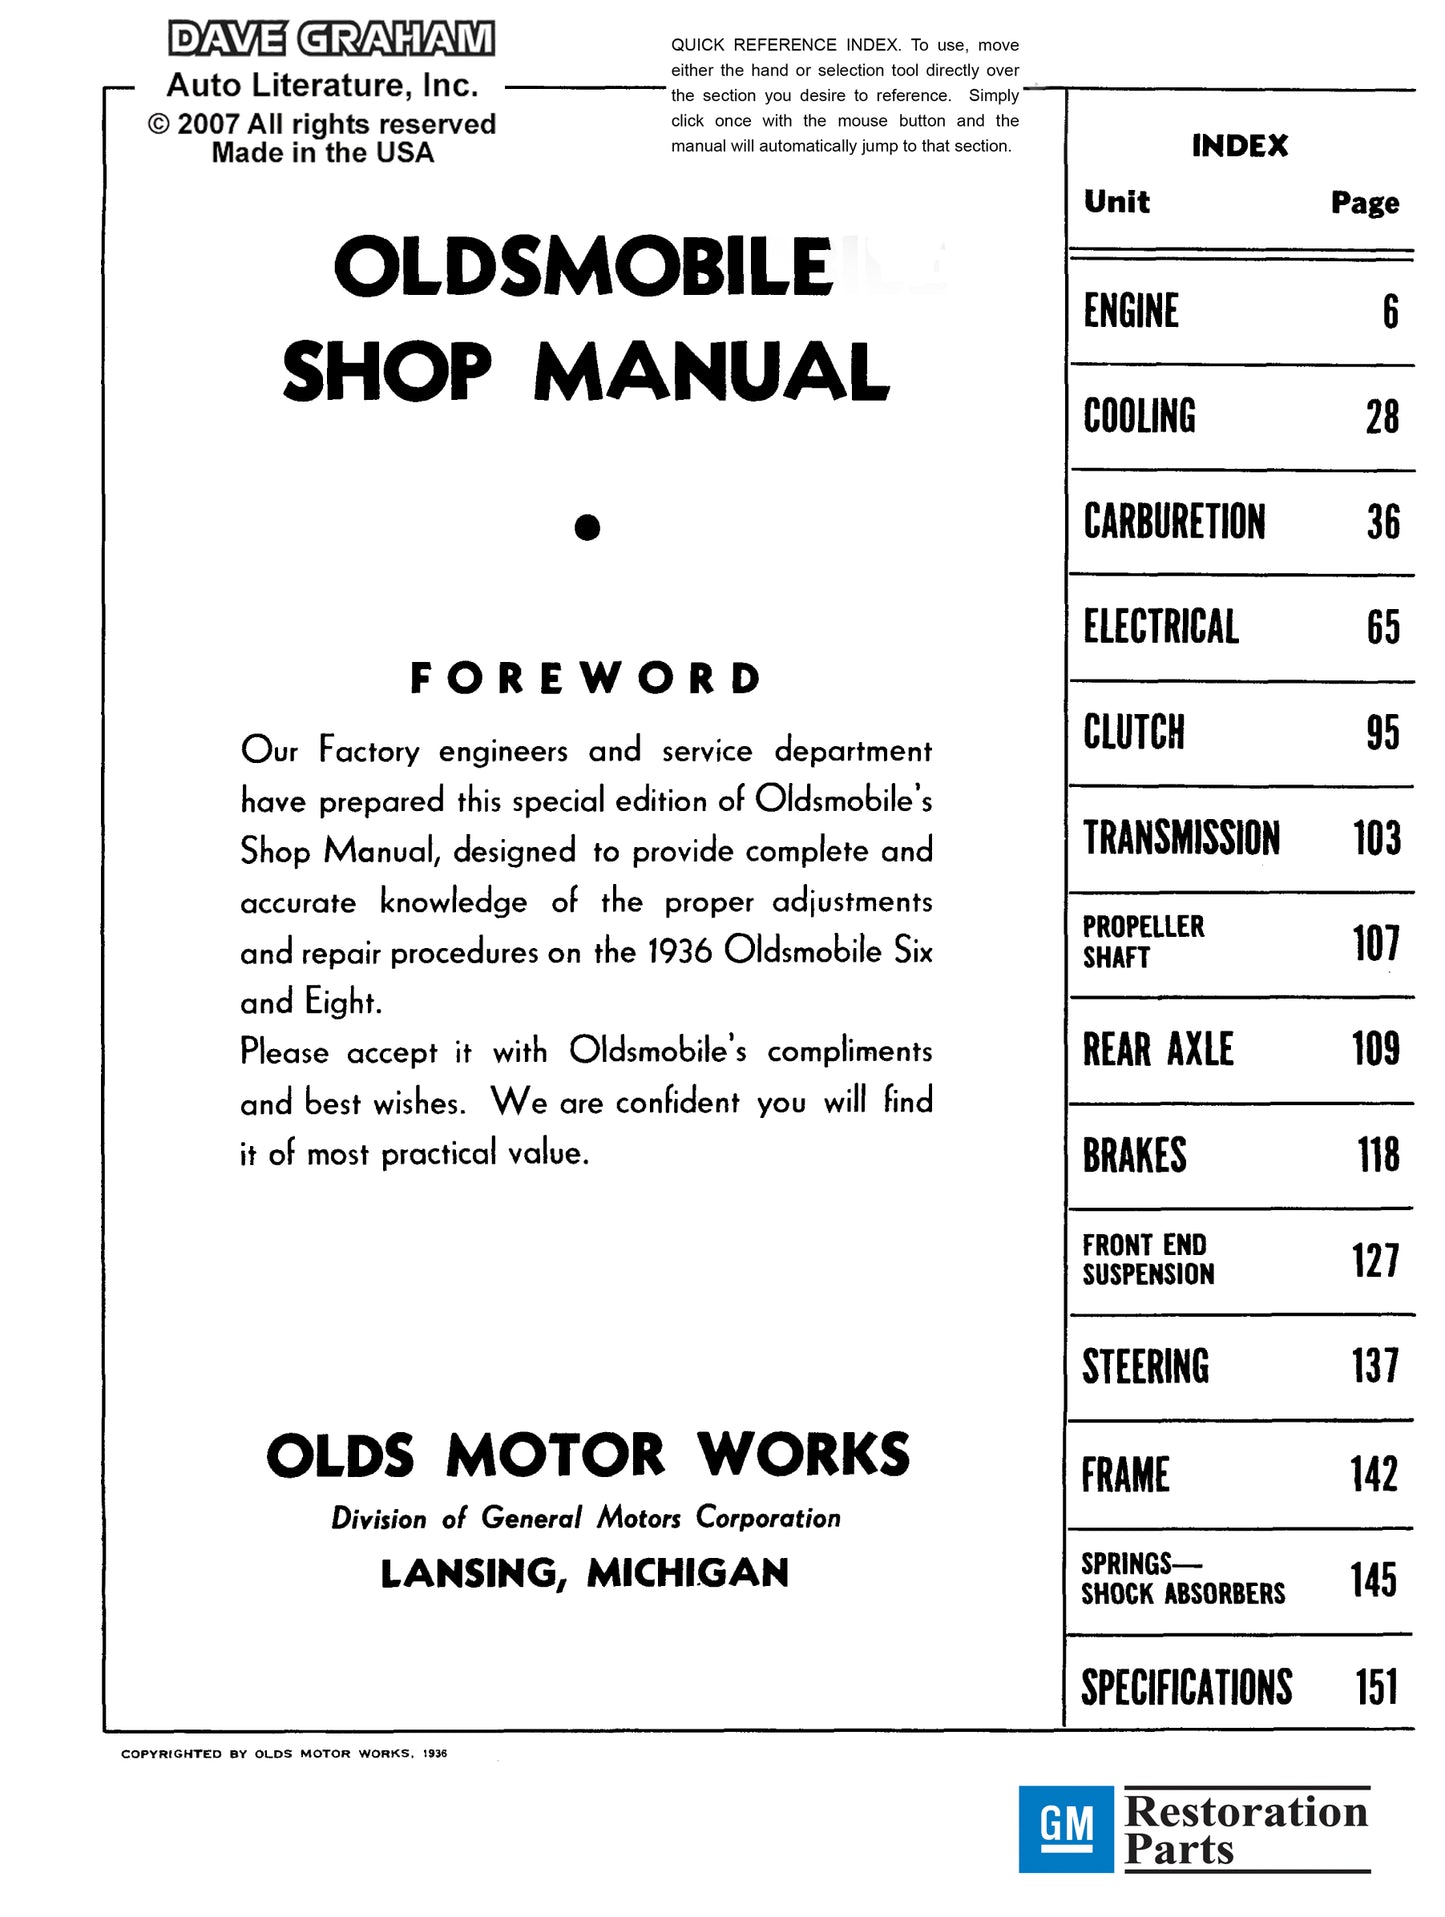 1934-1936 Oldsmobile Shop Manual- All Models